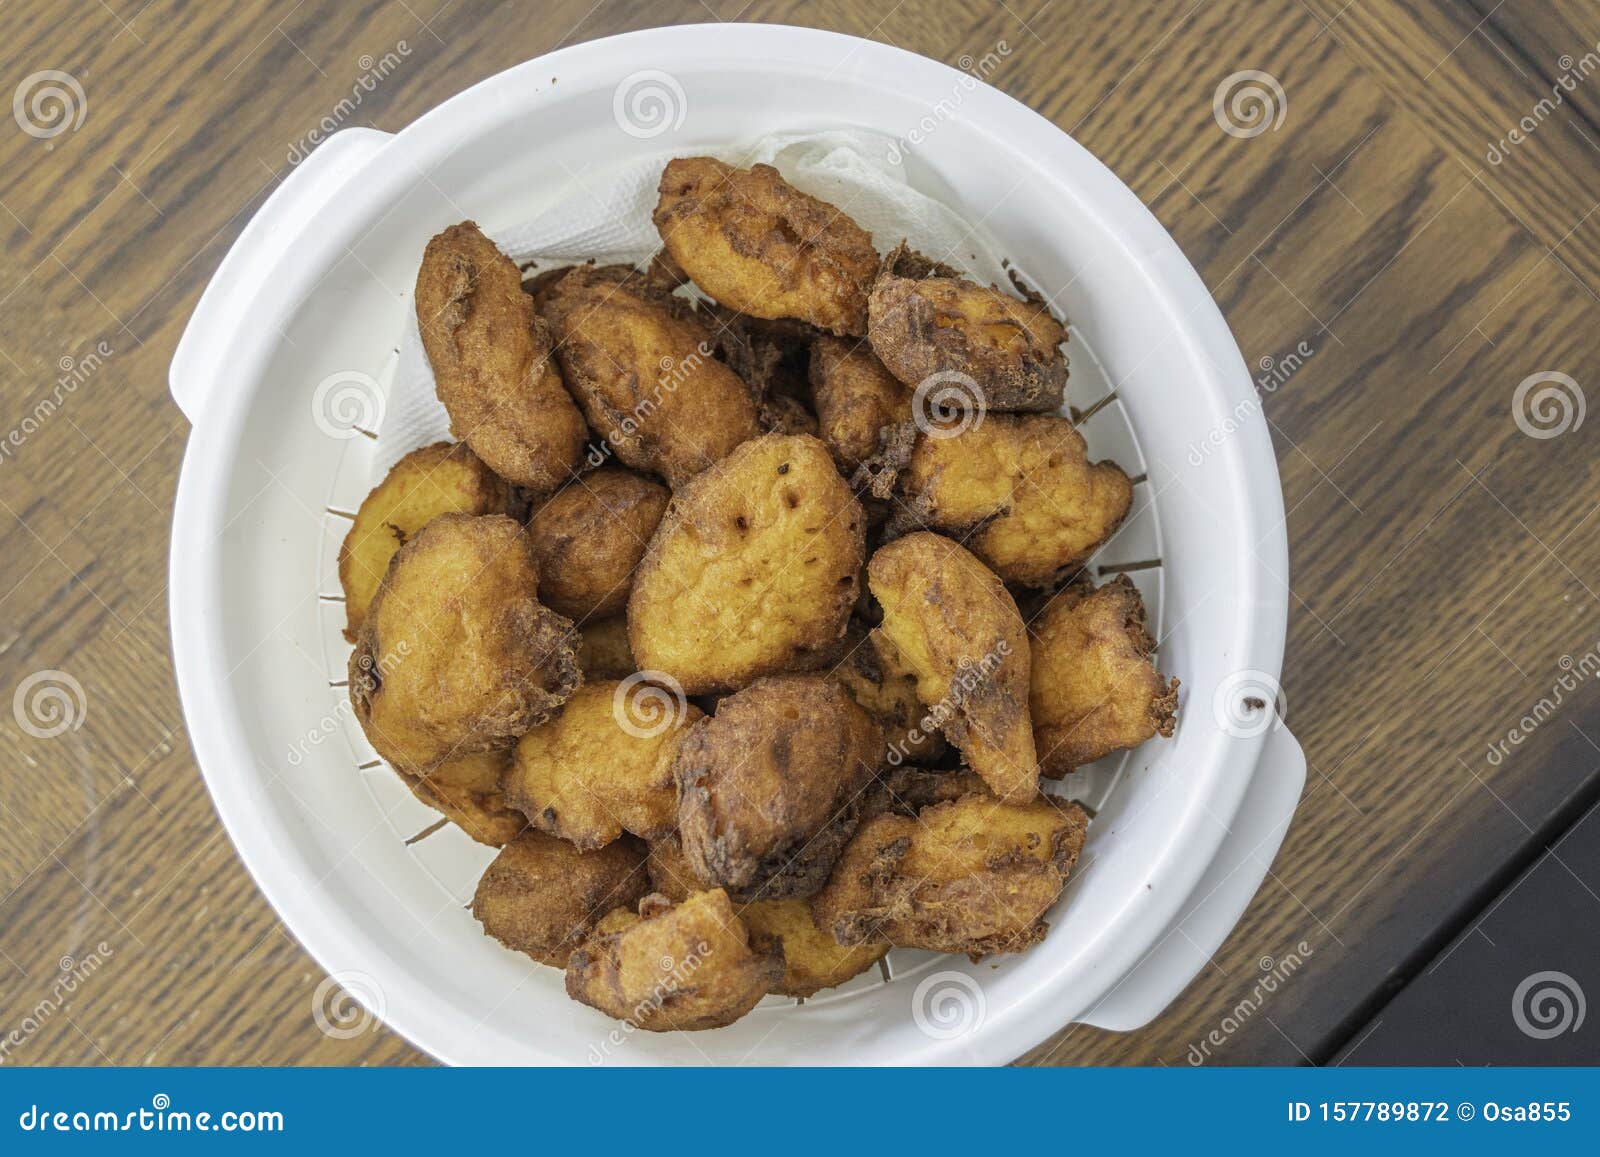 一盘尼日利亚菜汤和黄色的加里或eba 库存图片. 图片 包括有 健康, 蓝色, 布料, 五颜六色, 烘干 - 191300359